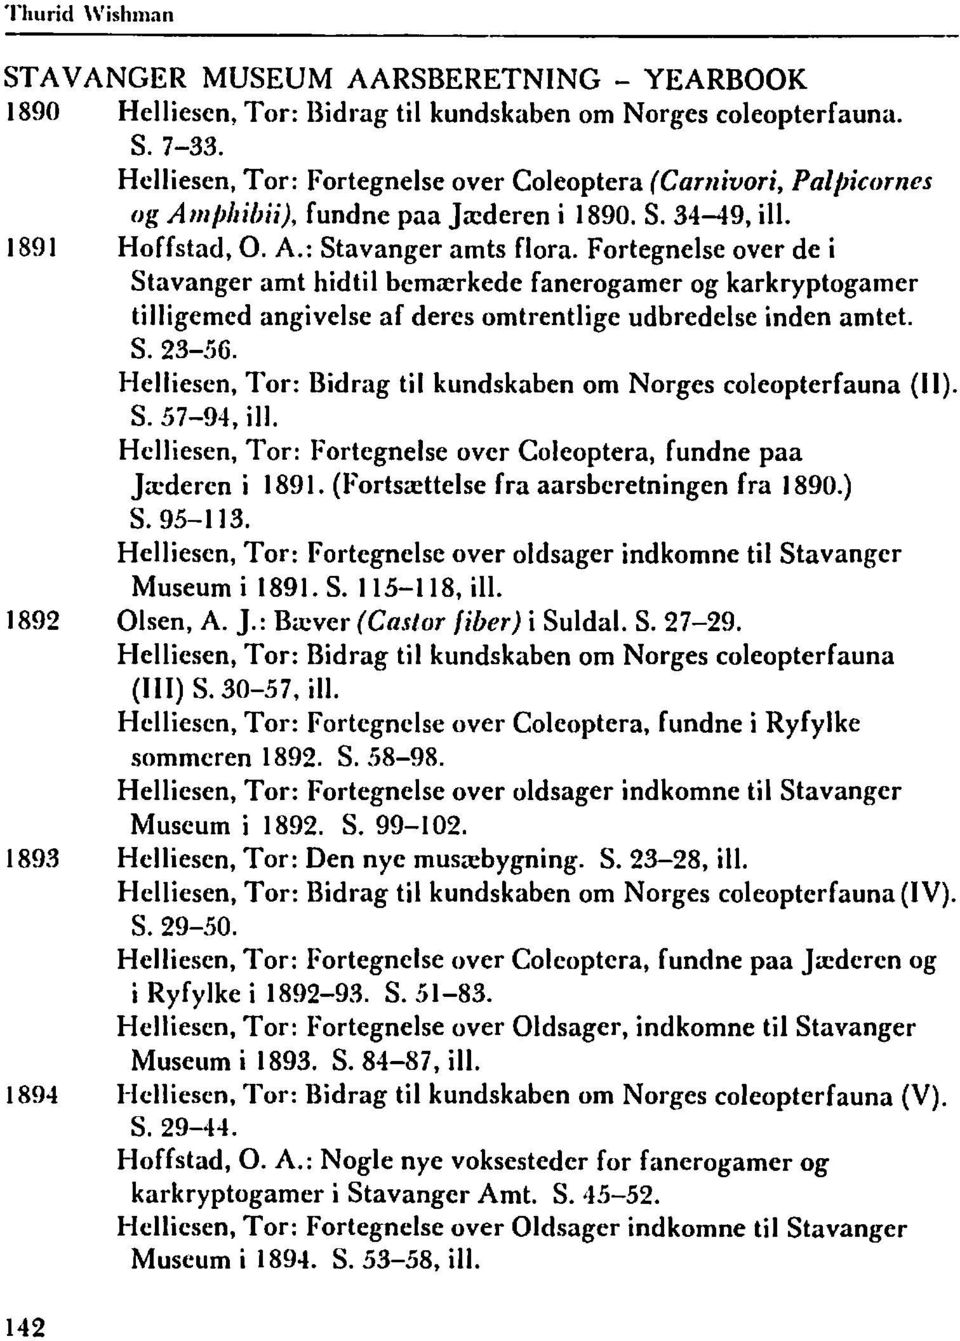 Fortegnelse over de i Stavanger amt hidtil bemrerkede fanerogamer og karkryptogamer tilligemed angivelse af deres omtrentlige udbredelse inden amtet. S. 23-56.